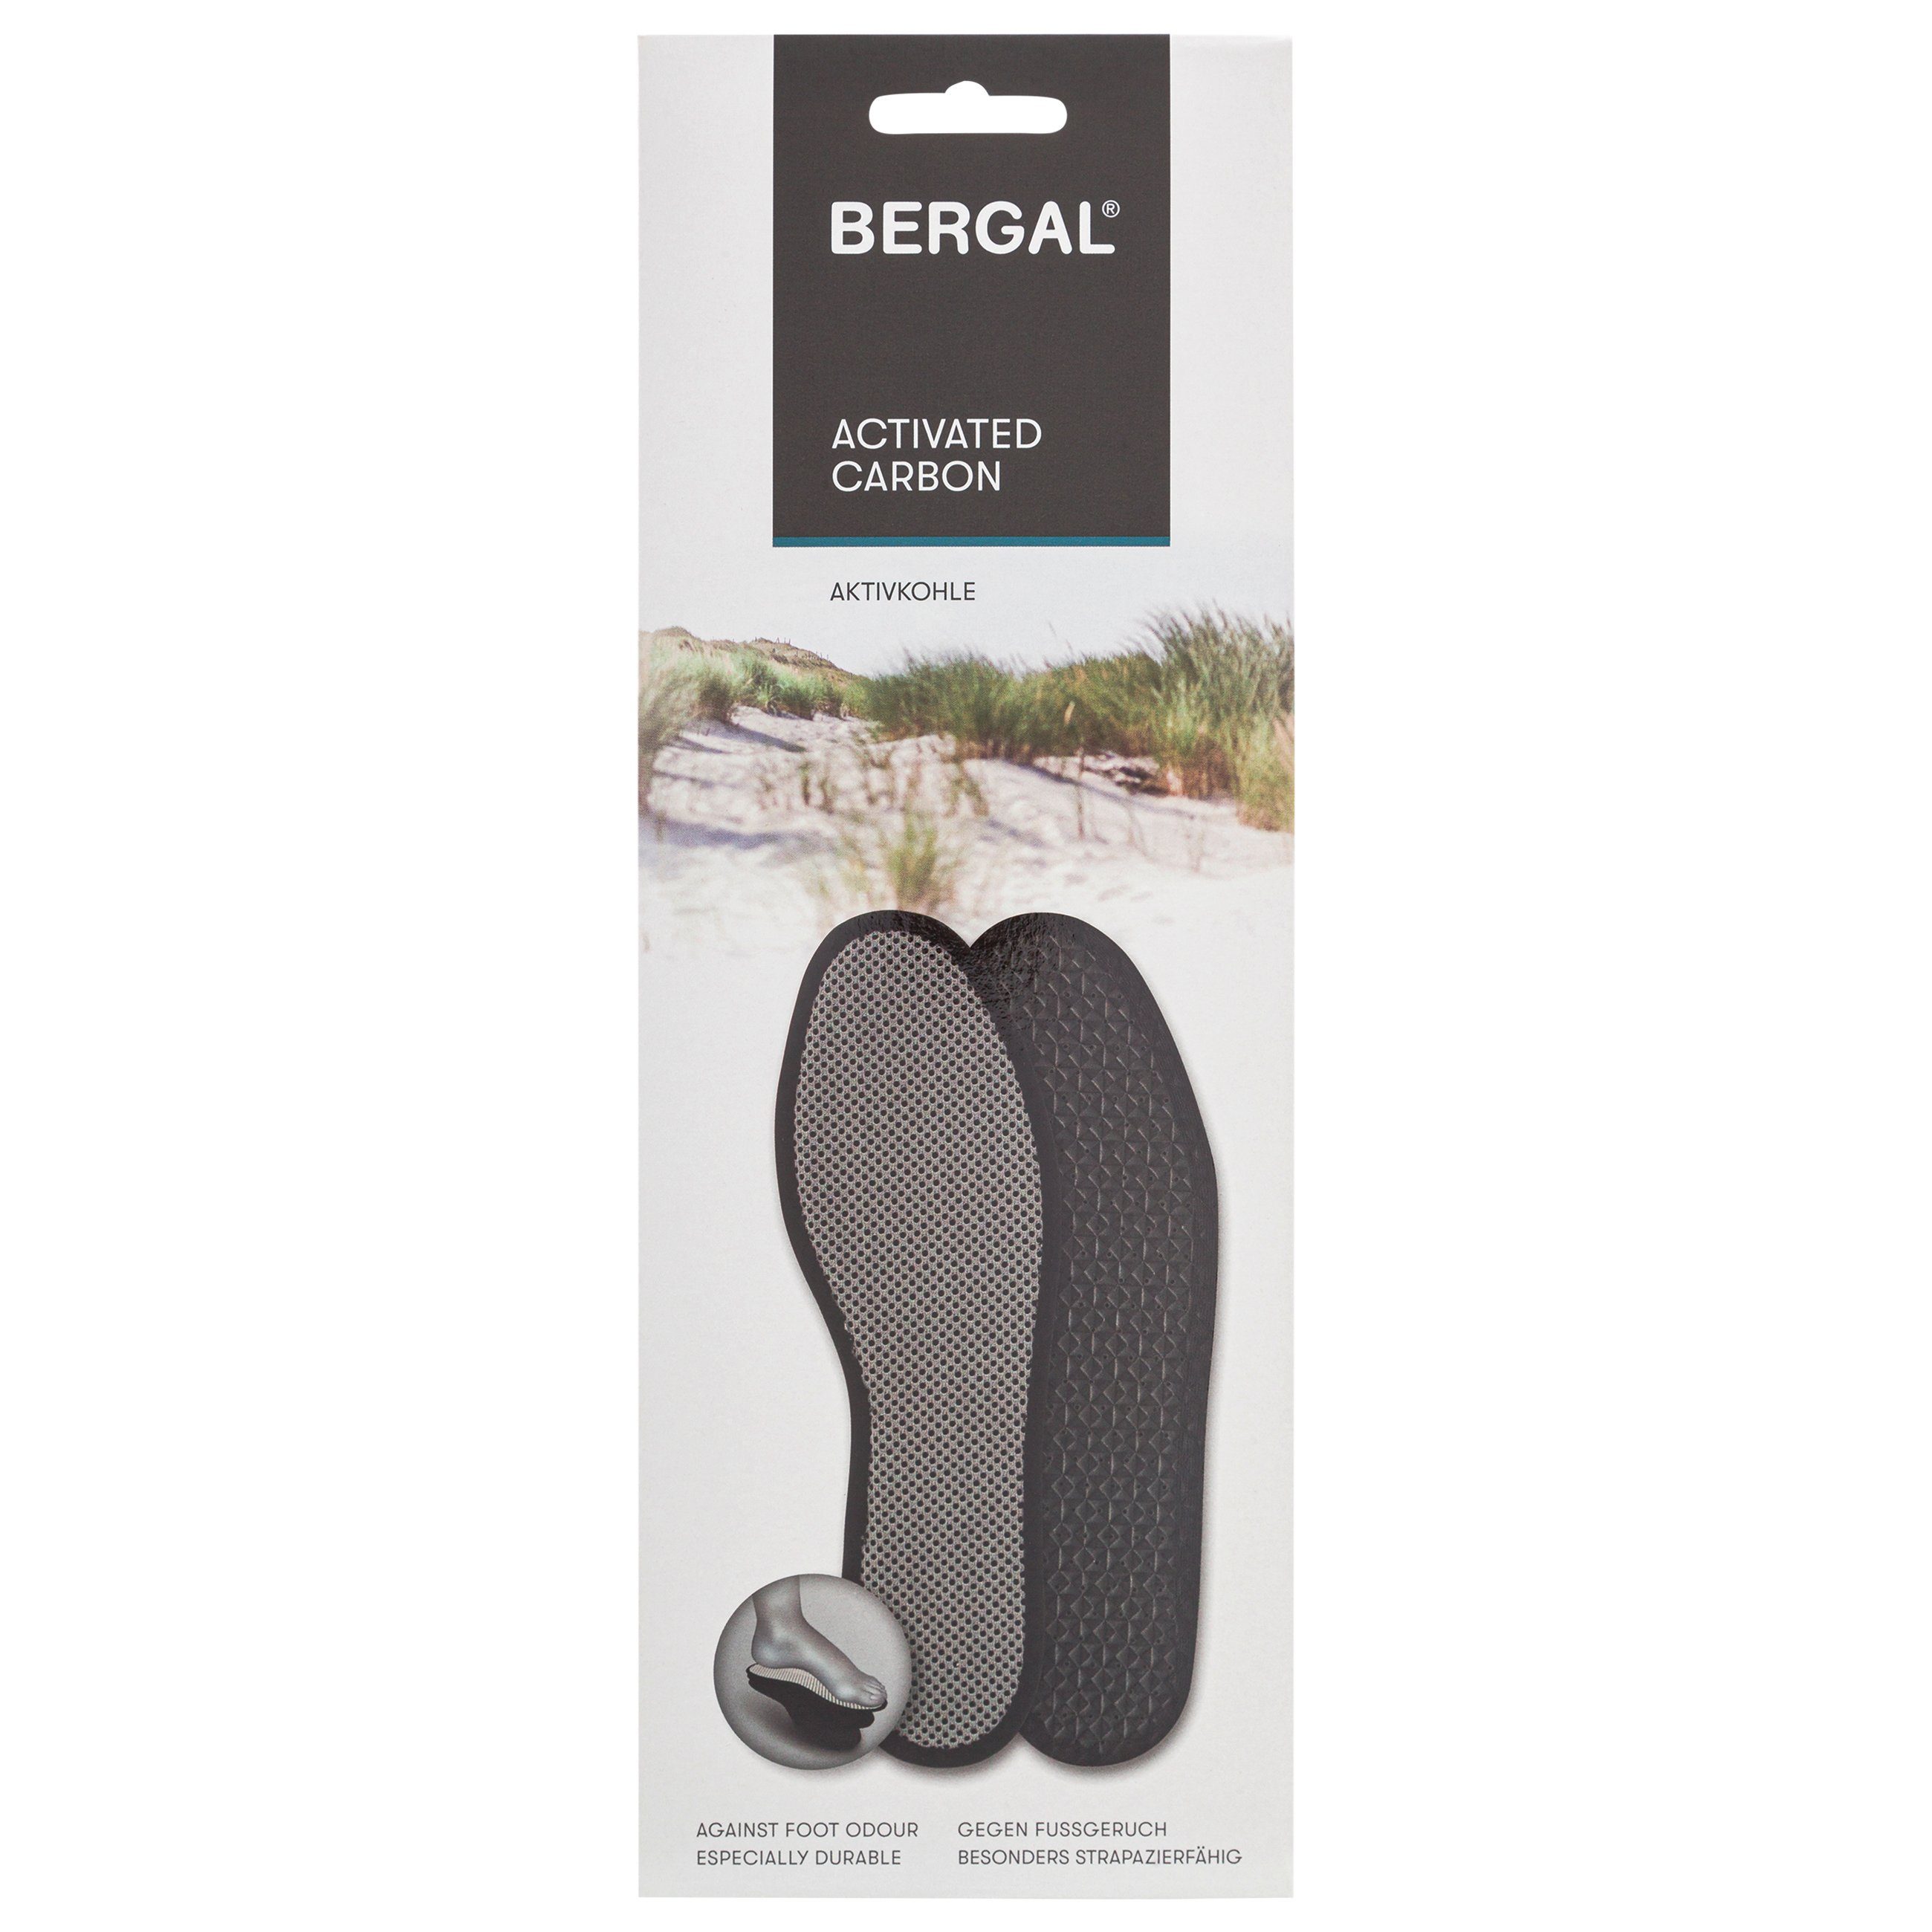 Bergal - in Füße Maße die hohem Fußgeruch hält Frischesohlen und Aktivkohle absorbiert frisch